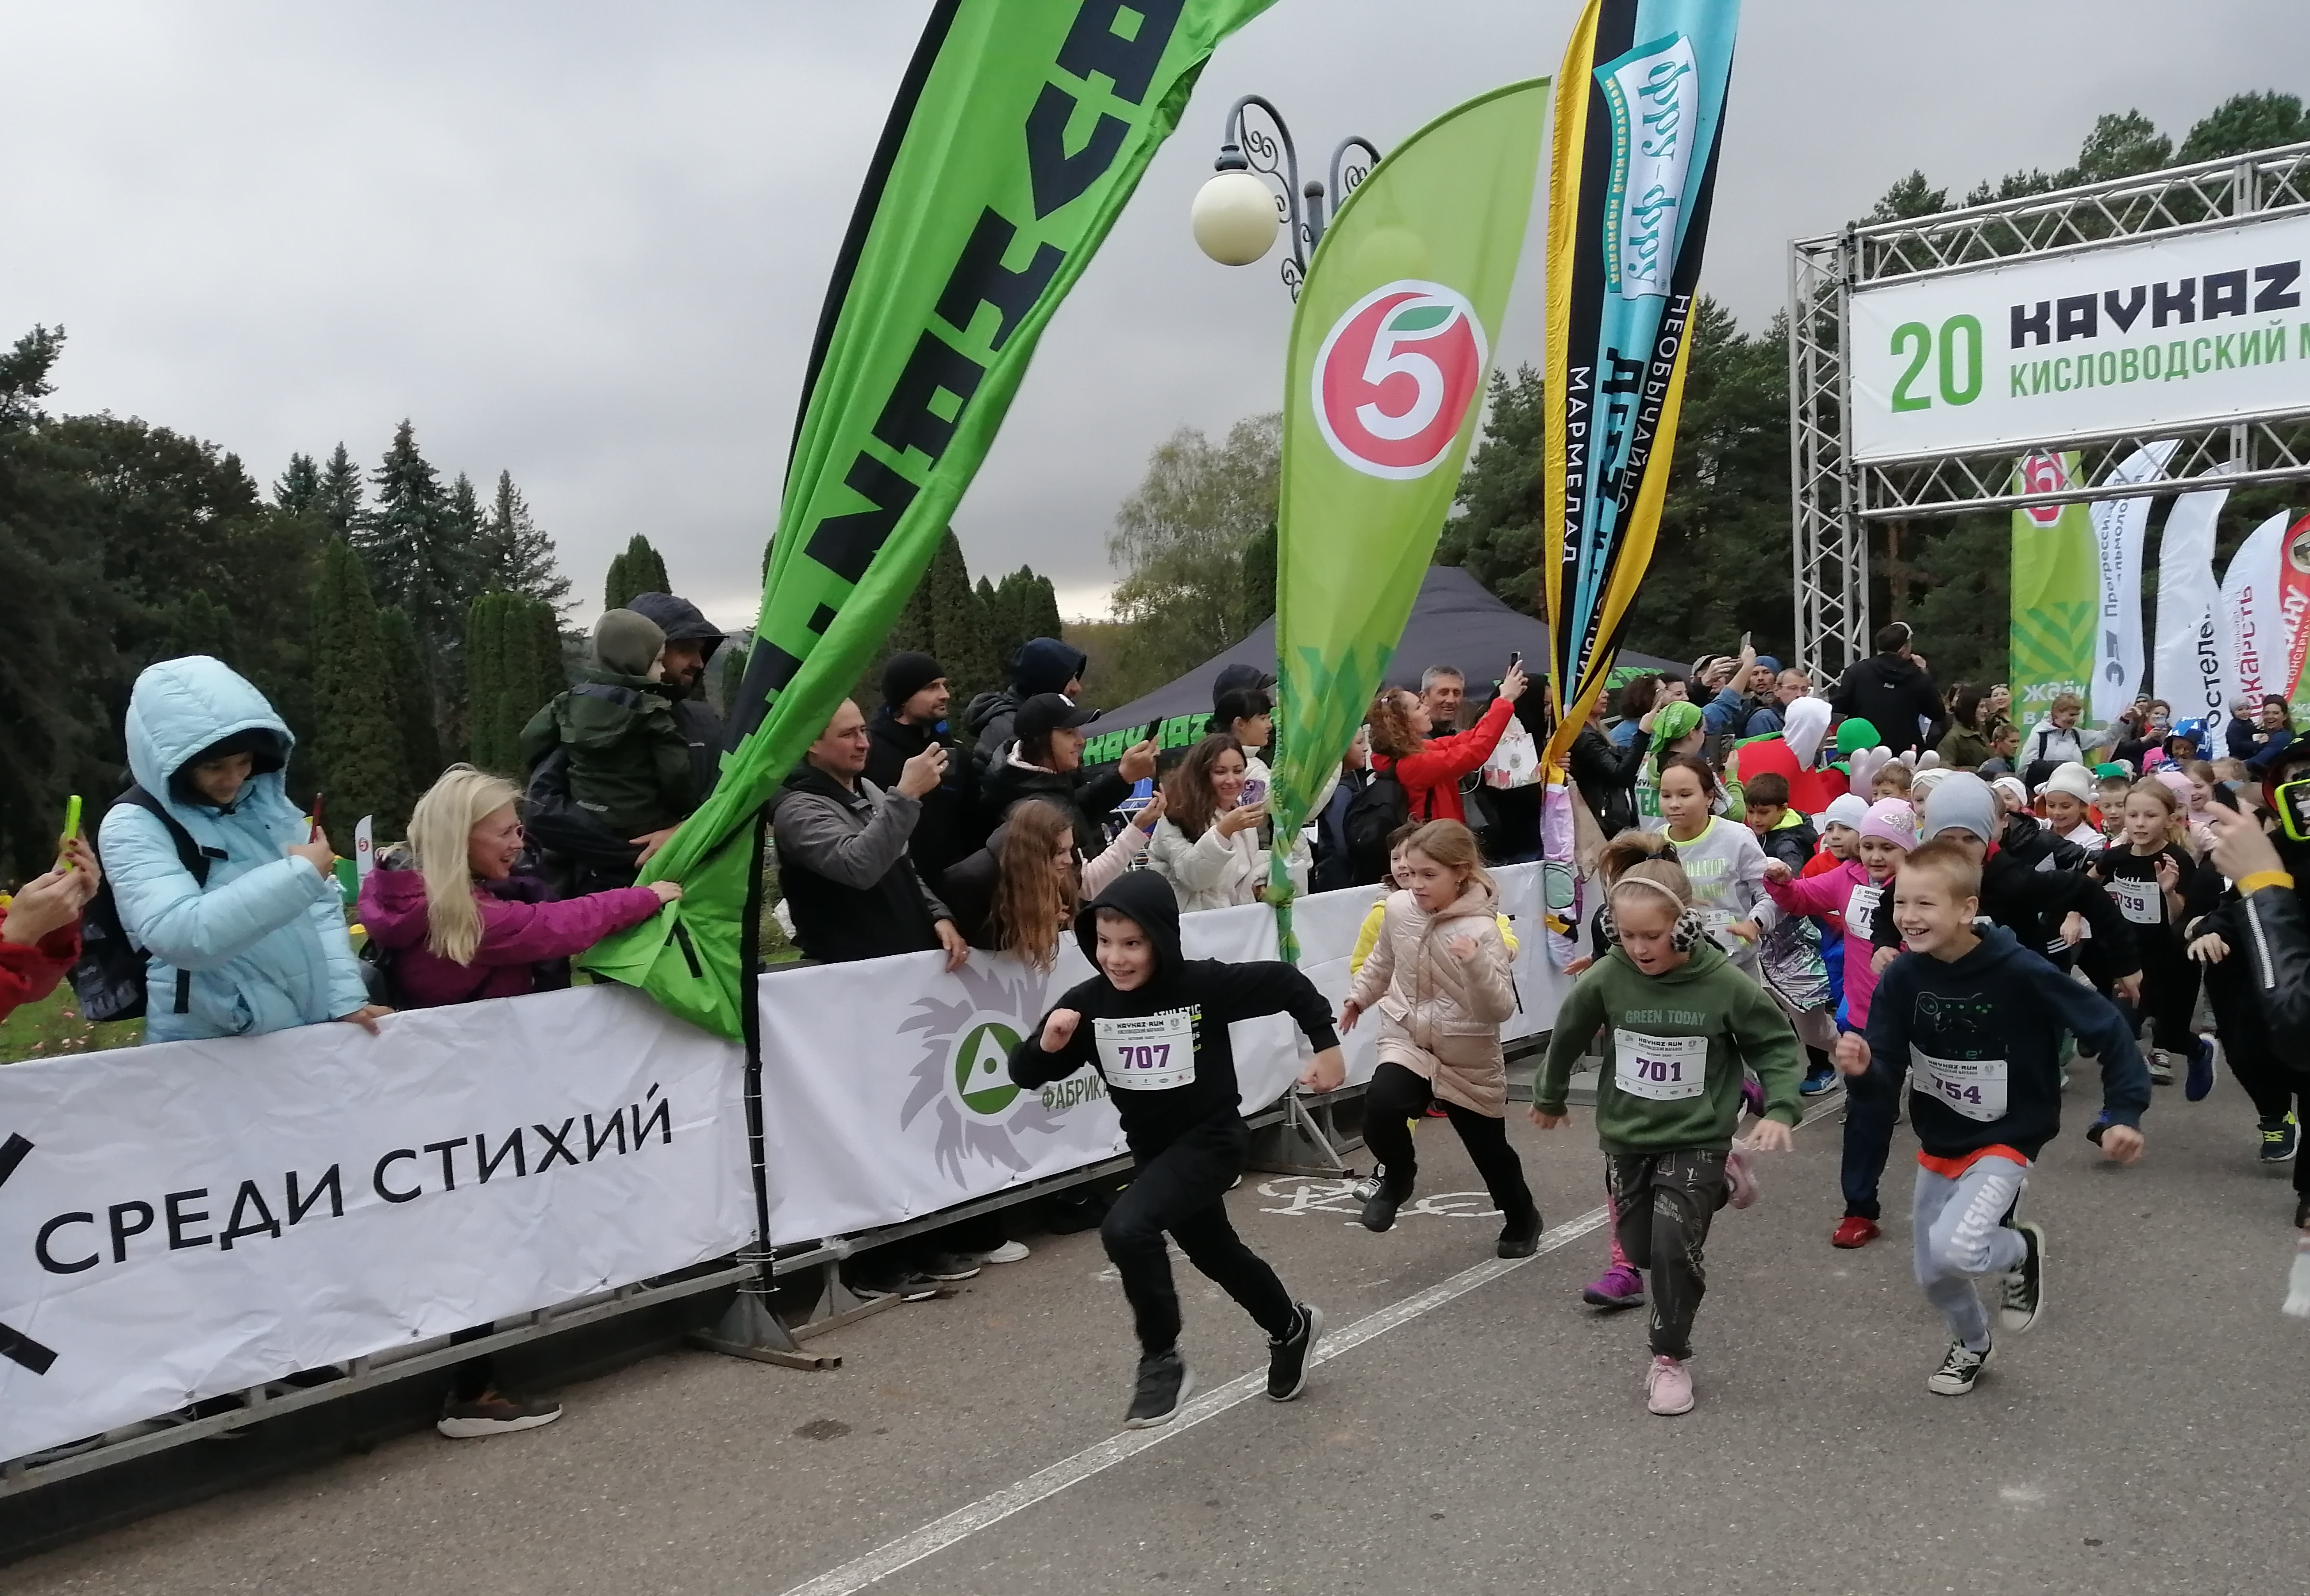 Легкоатлетический марафон в Кисловодске собрал участников из  54 регионов страны